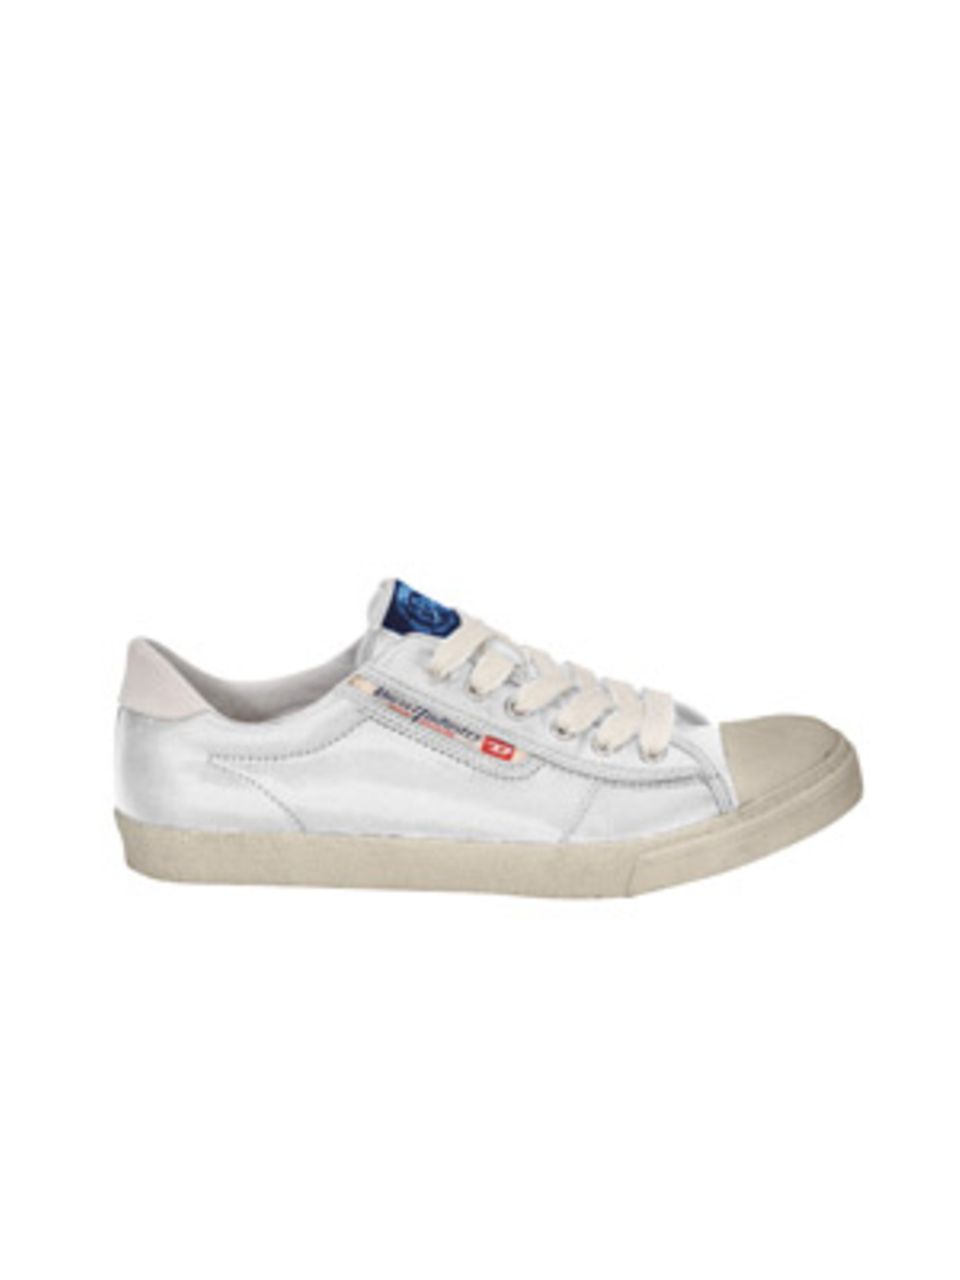 Weiße Sneakers im Used-Look mit blauer Lasche von DIESEL, um 85 Euro.